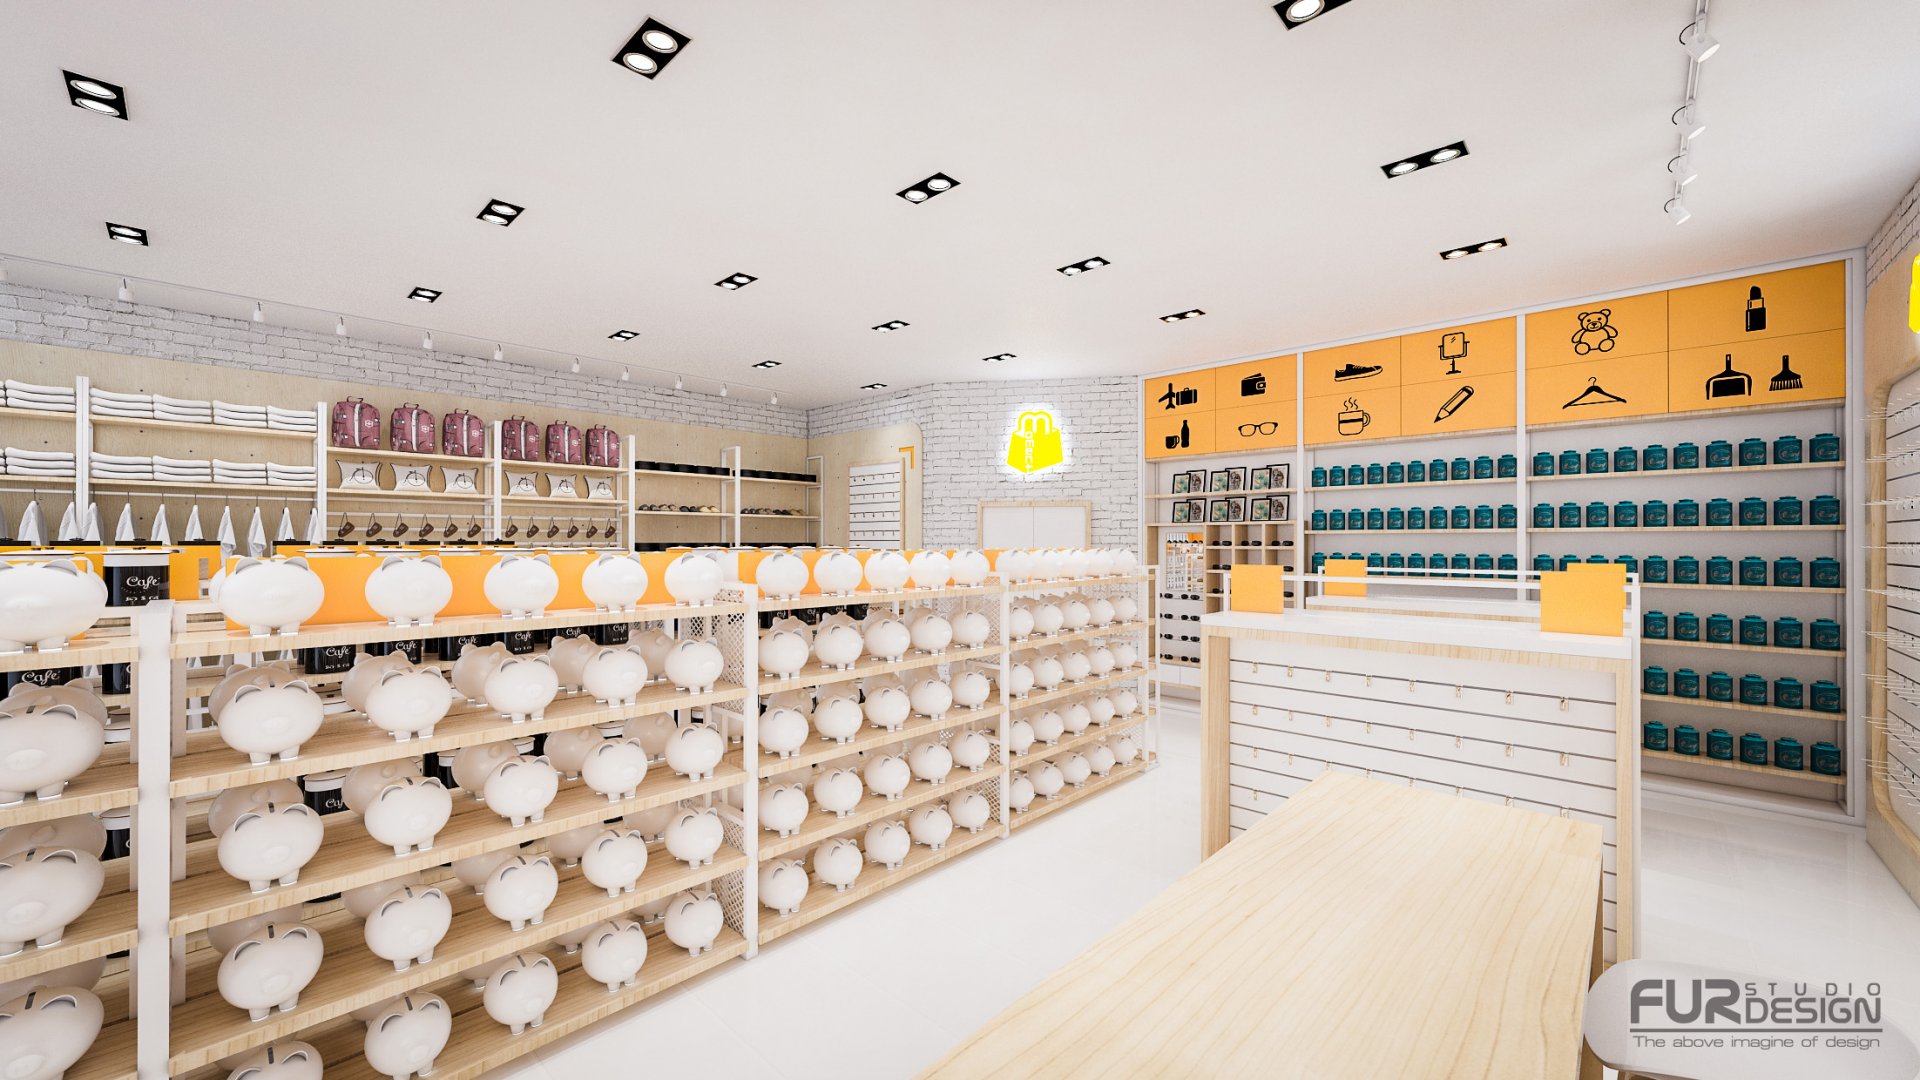 ออกแบบ 3D ร้าน MOMENT  ร้านจำหน่ายกิ๊ฟช็อป ขายสินค้าหลายหมวดหมู่ เช่น เครื่องสำอาง , กระเป๋า , รองเท้า , ของใช้ในชีวิตประจำวัน , ของตกแต่งบ้าน ฯลฯ 